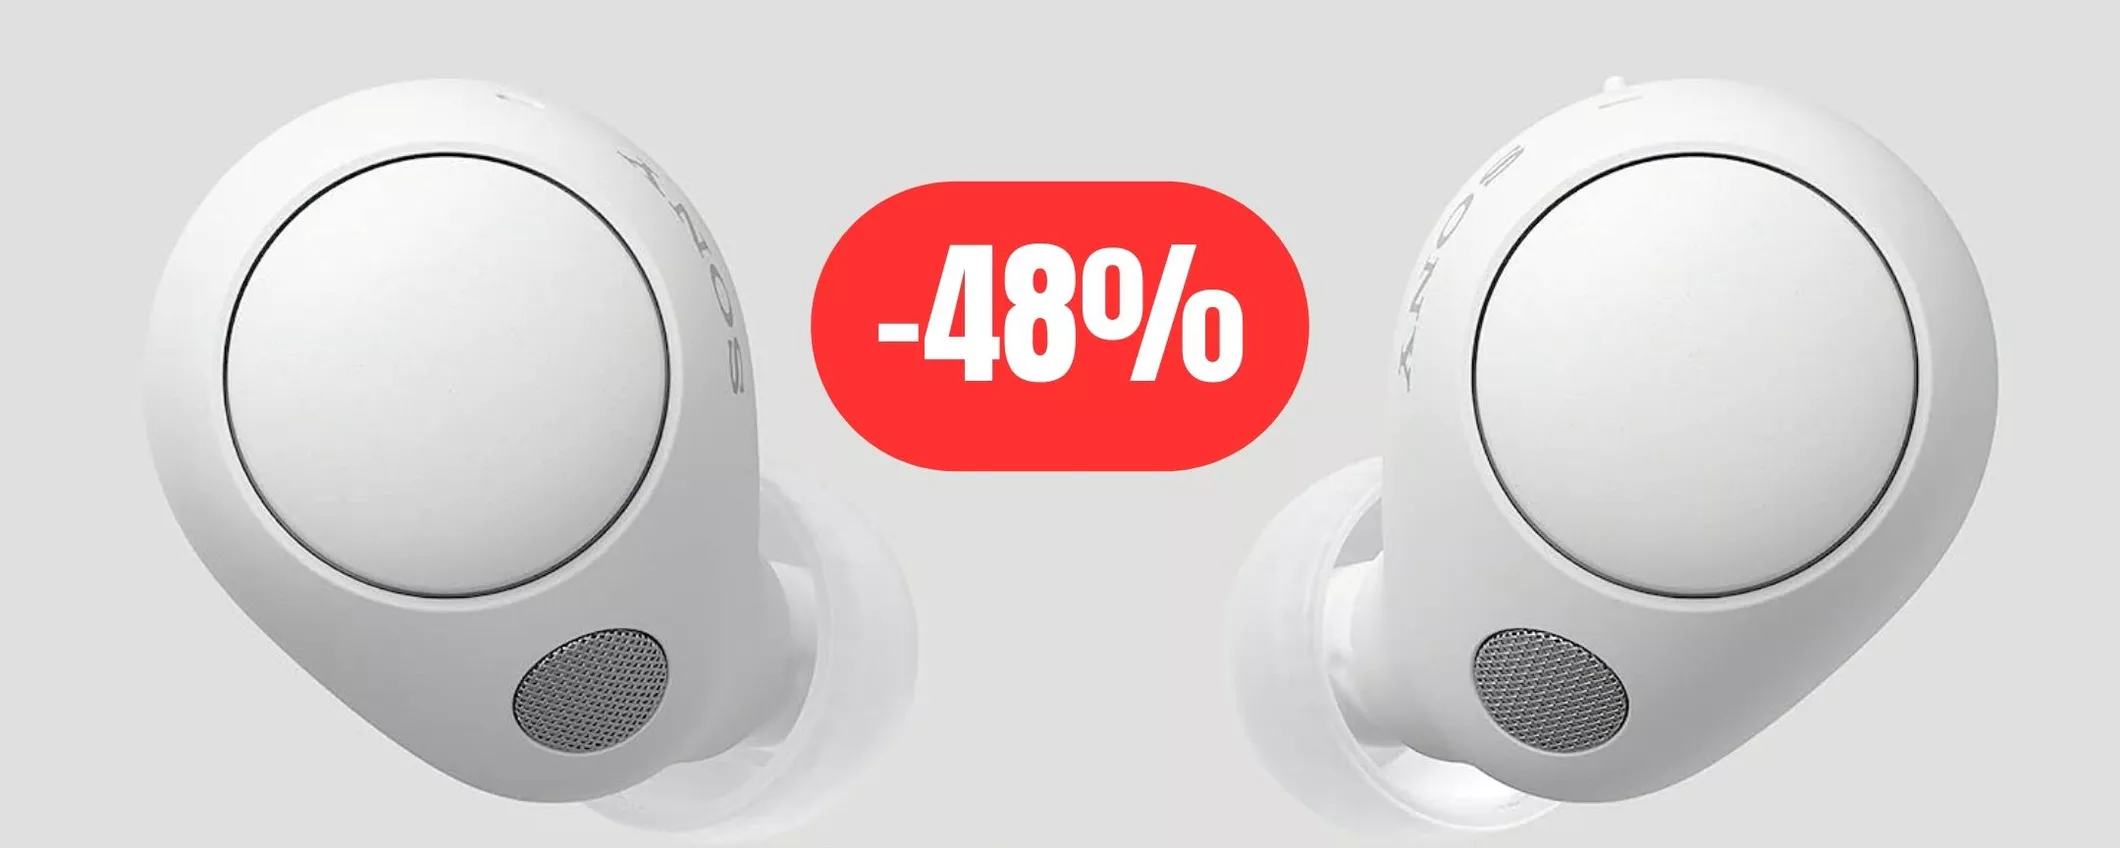 Cuffie Sony: qualità audio eccezionale e comfort auricolare al 48% di sconto